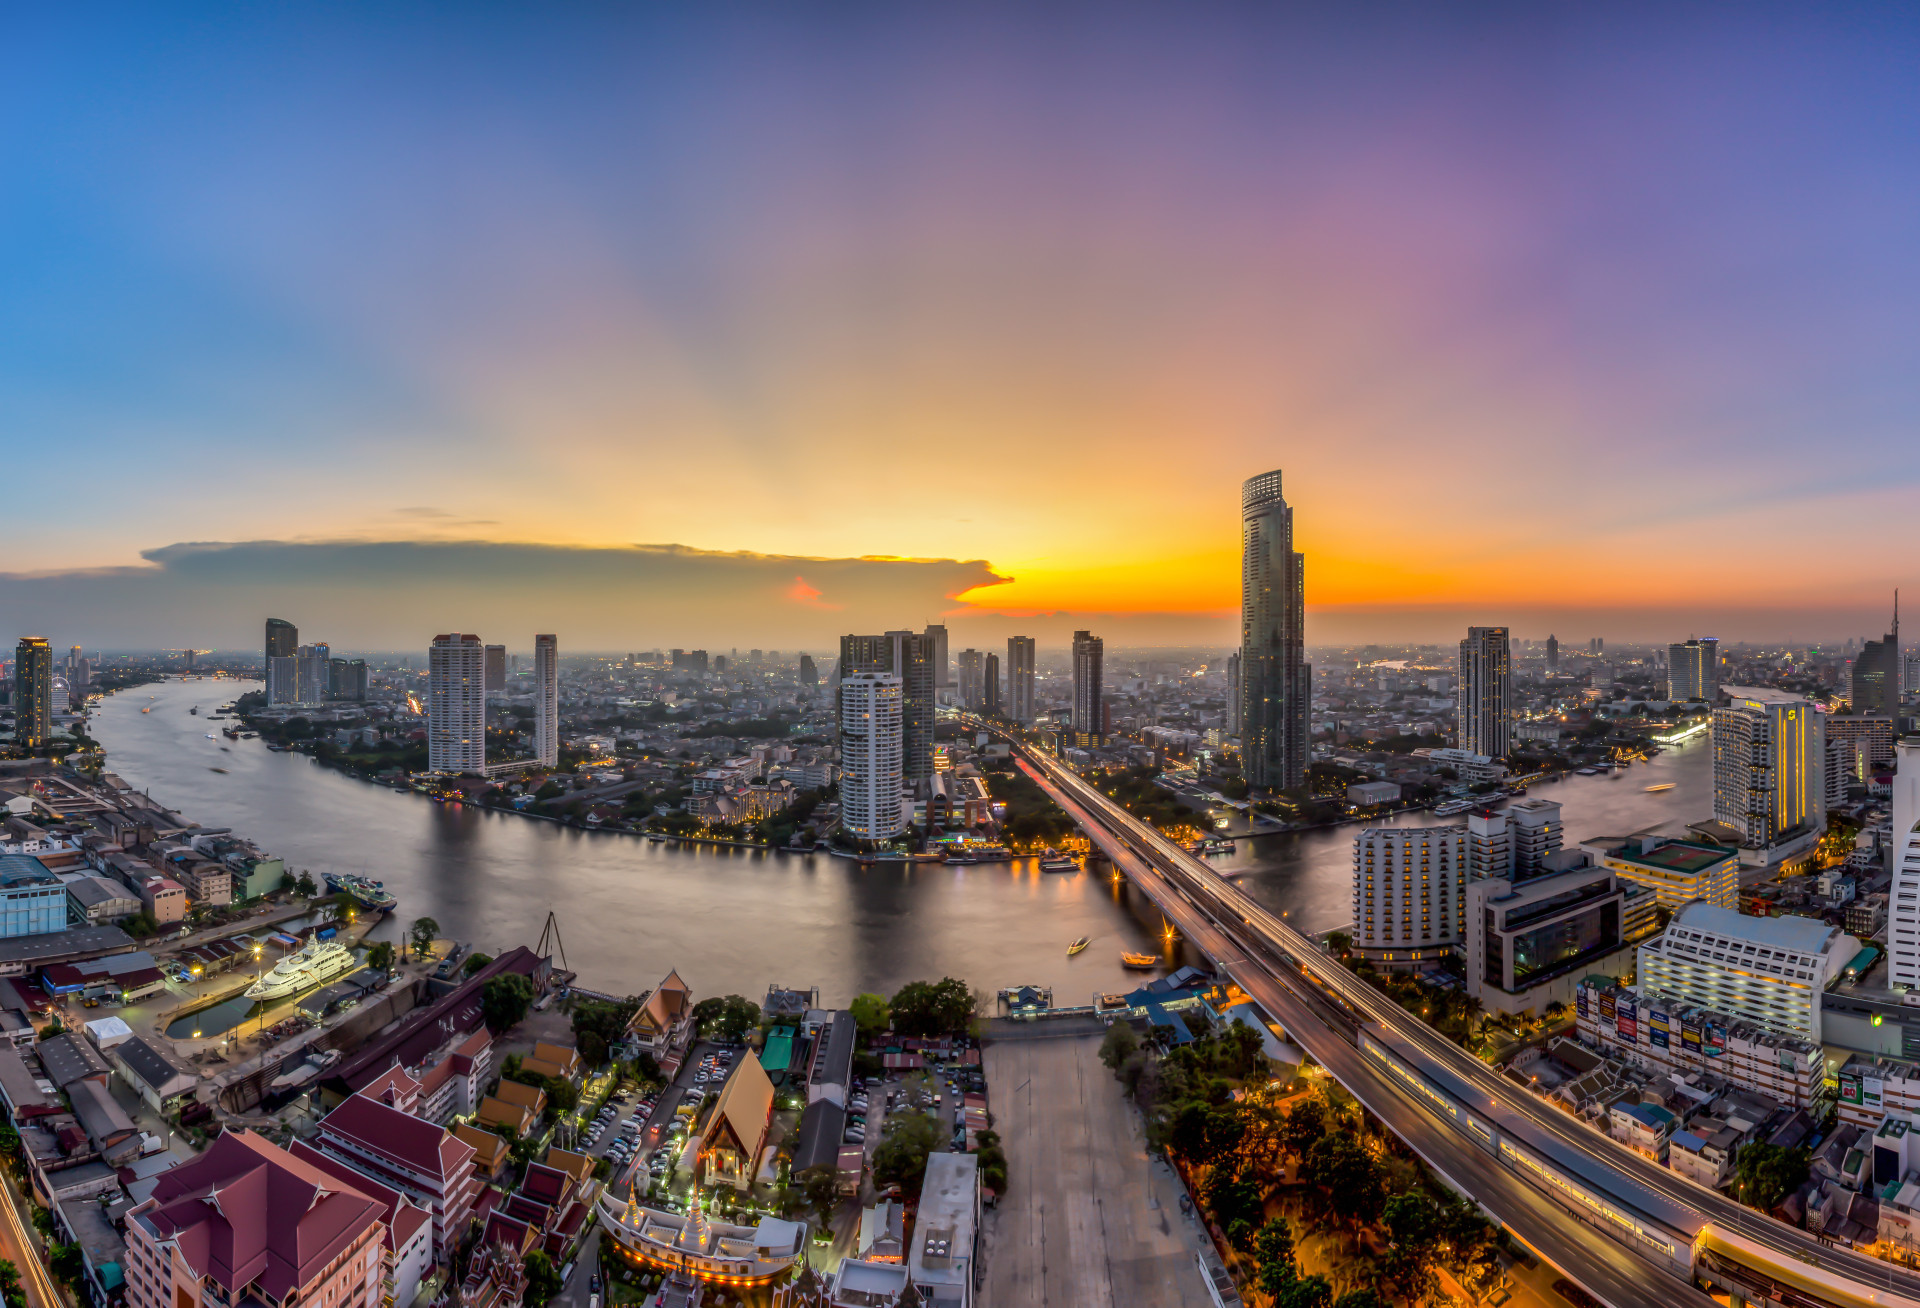 Le paysage désorganisé de Bangkok, parsemé ici et là de gratte-ciel, témoigne de la croissance bondissante de la ville. Sa beauté se révèle dans son apparence chaotique.<p>Tu pourrais aussi aimer:<a href="https://www.starsinsider.com/n/391664?utm_source=msn.com&utm_medium=display&utm_campaign=referral_description&utm_content=217079v3fr-ca"> Robert Redford: plus de 60 ans de films</a></p>